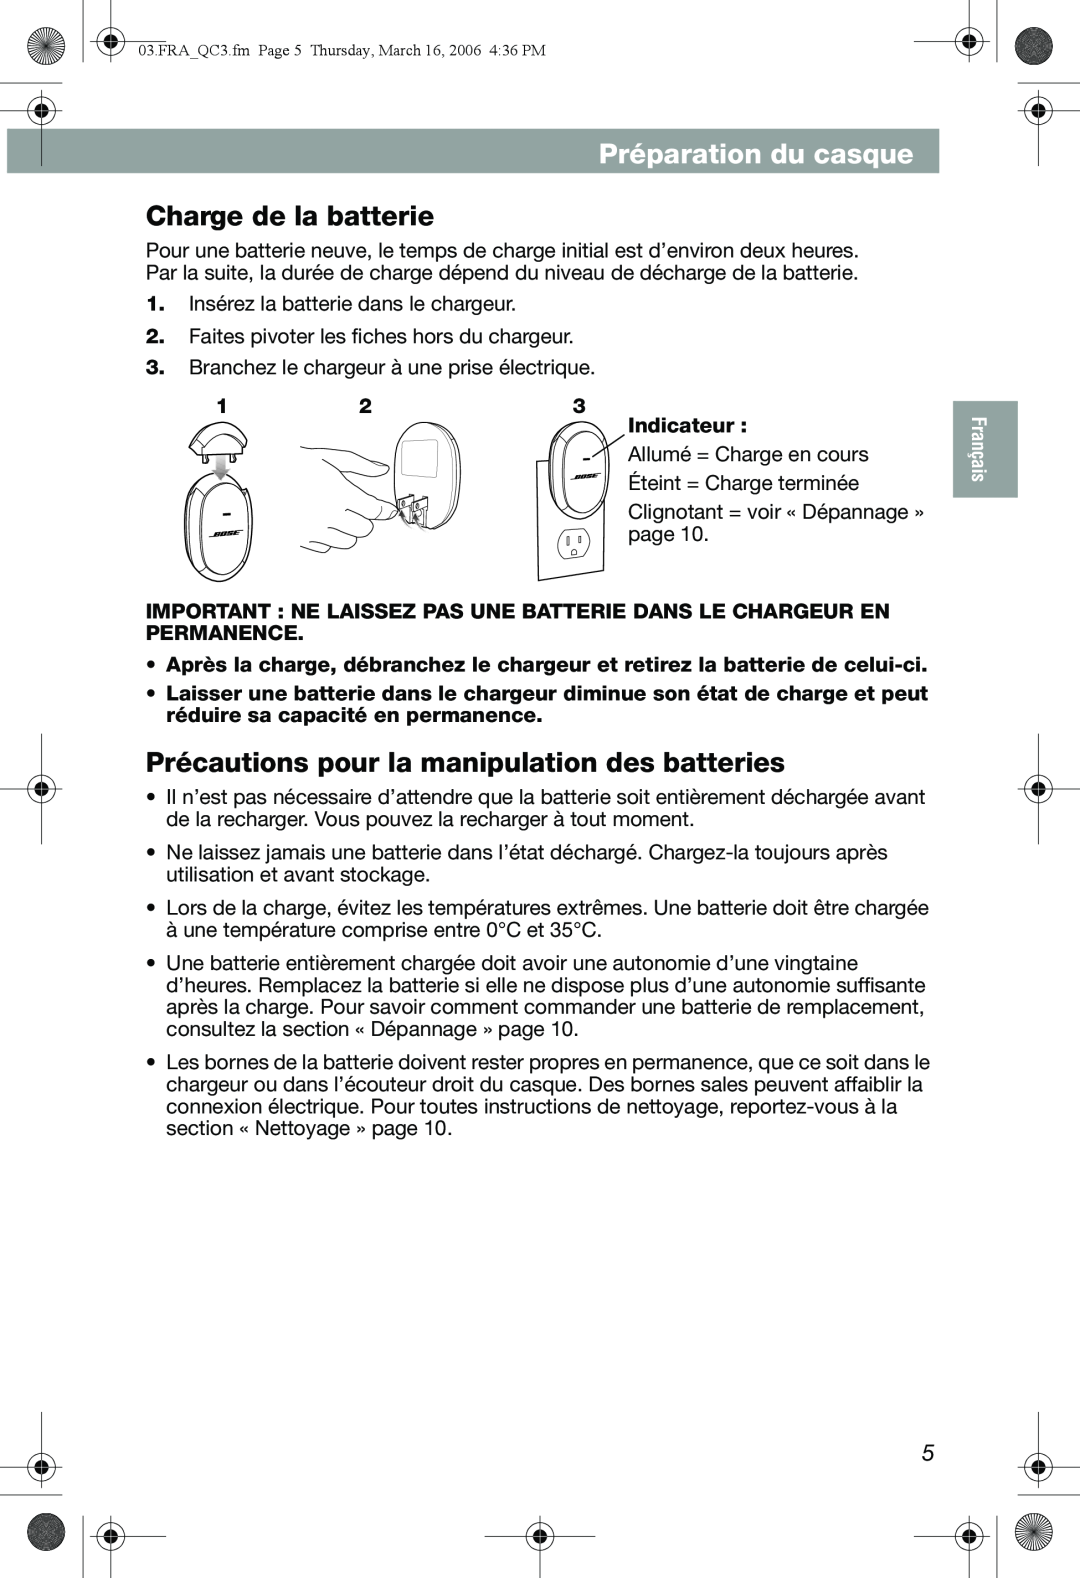 Bose QuietComfort 3 manual Préparation du casque, Charge de la batterie, Précautions pour la manipulation des batteries 